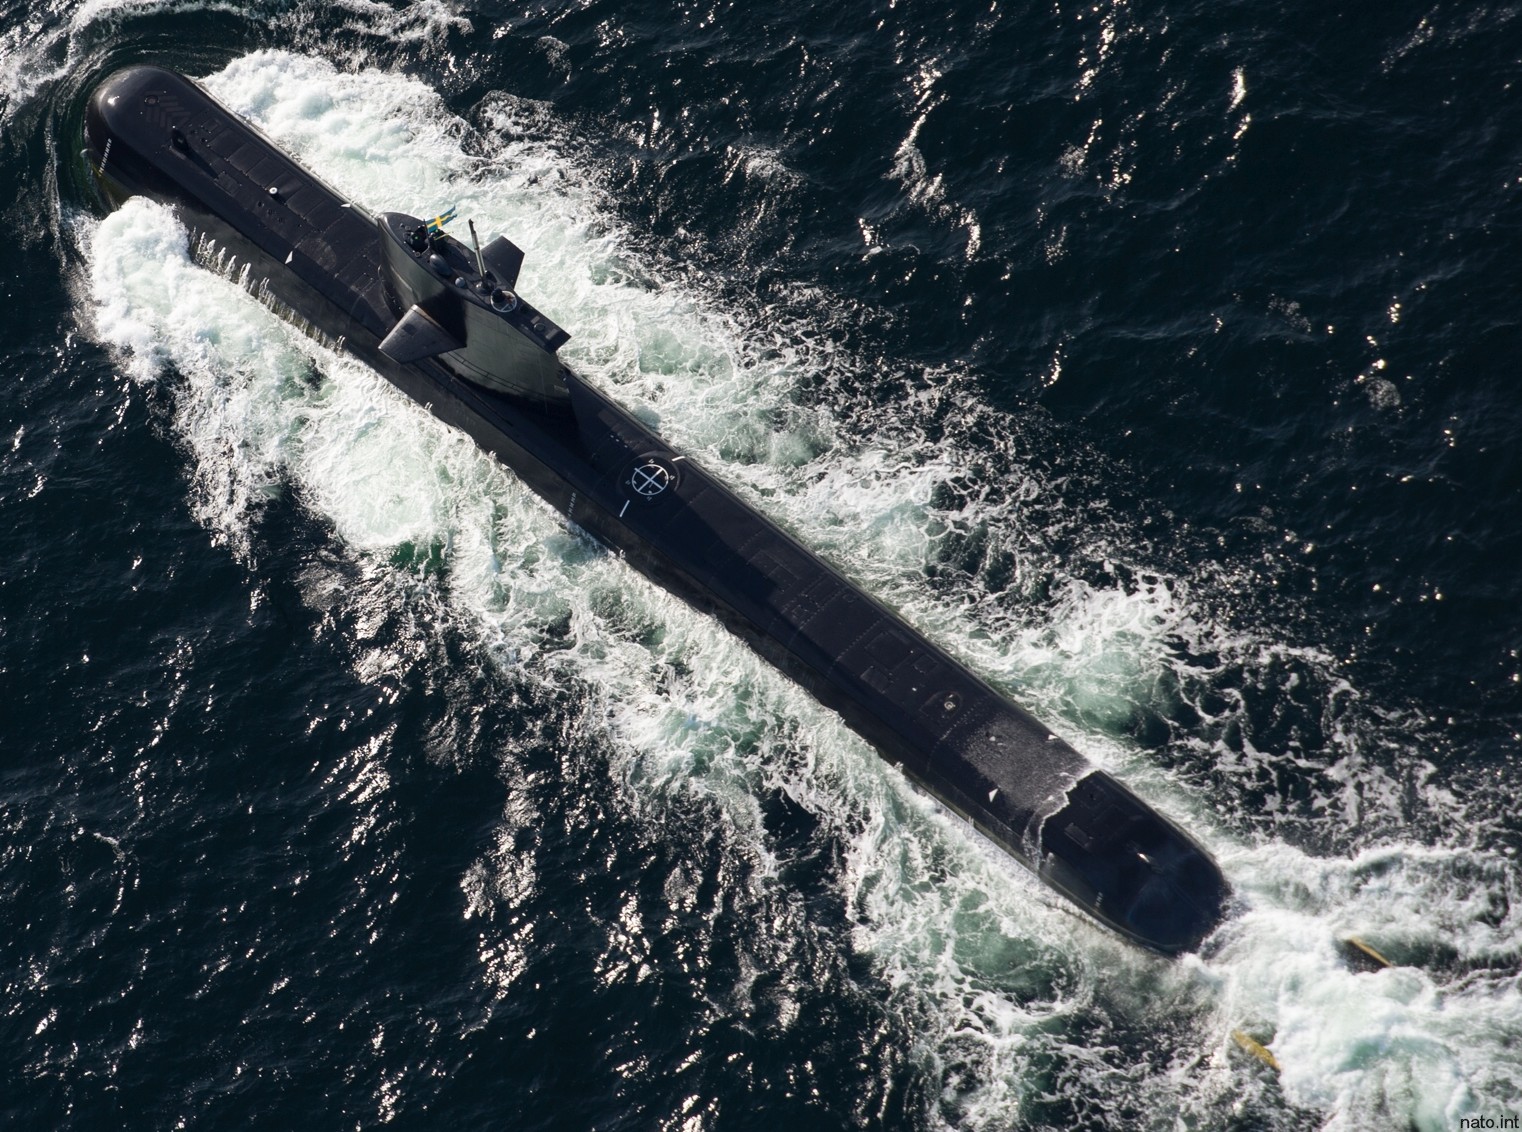 hswms hms halland hnd gotland class submarine ssk swedish navy svenska marinen försvarsmakten kockums 15